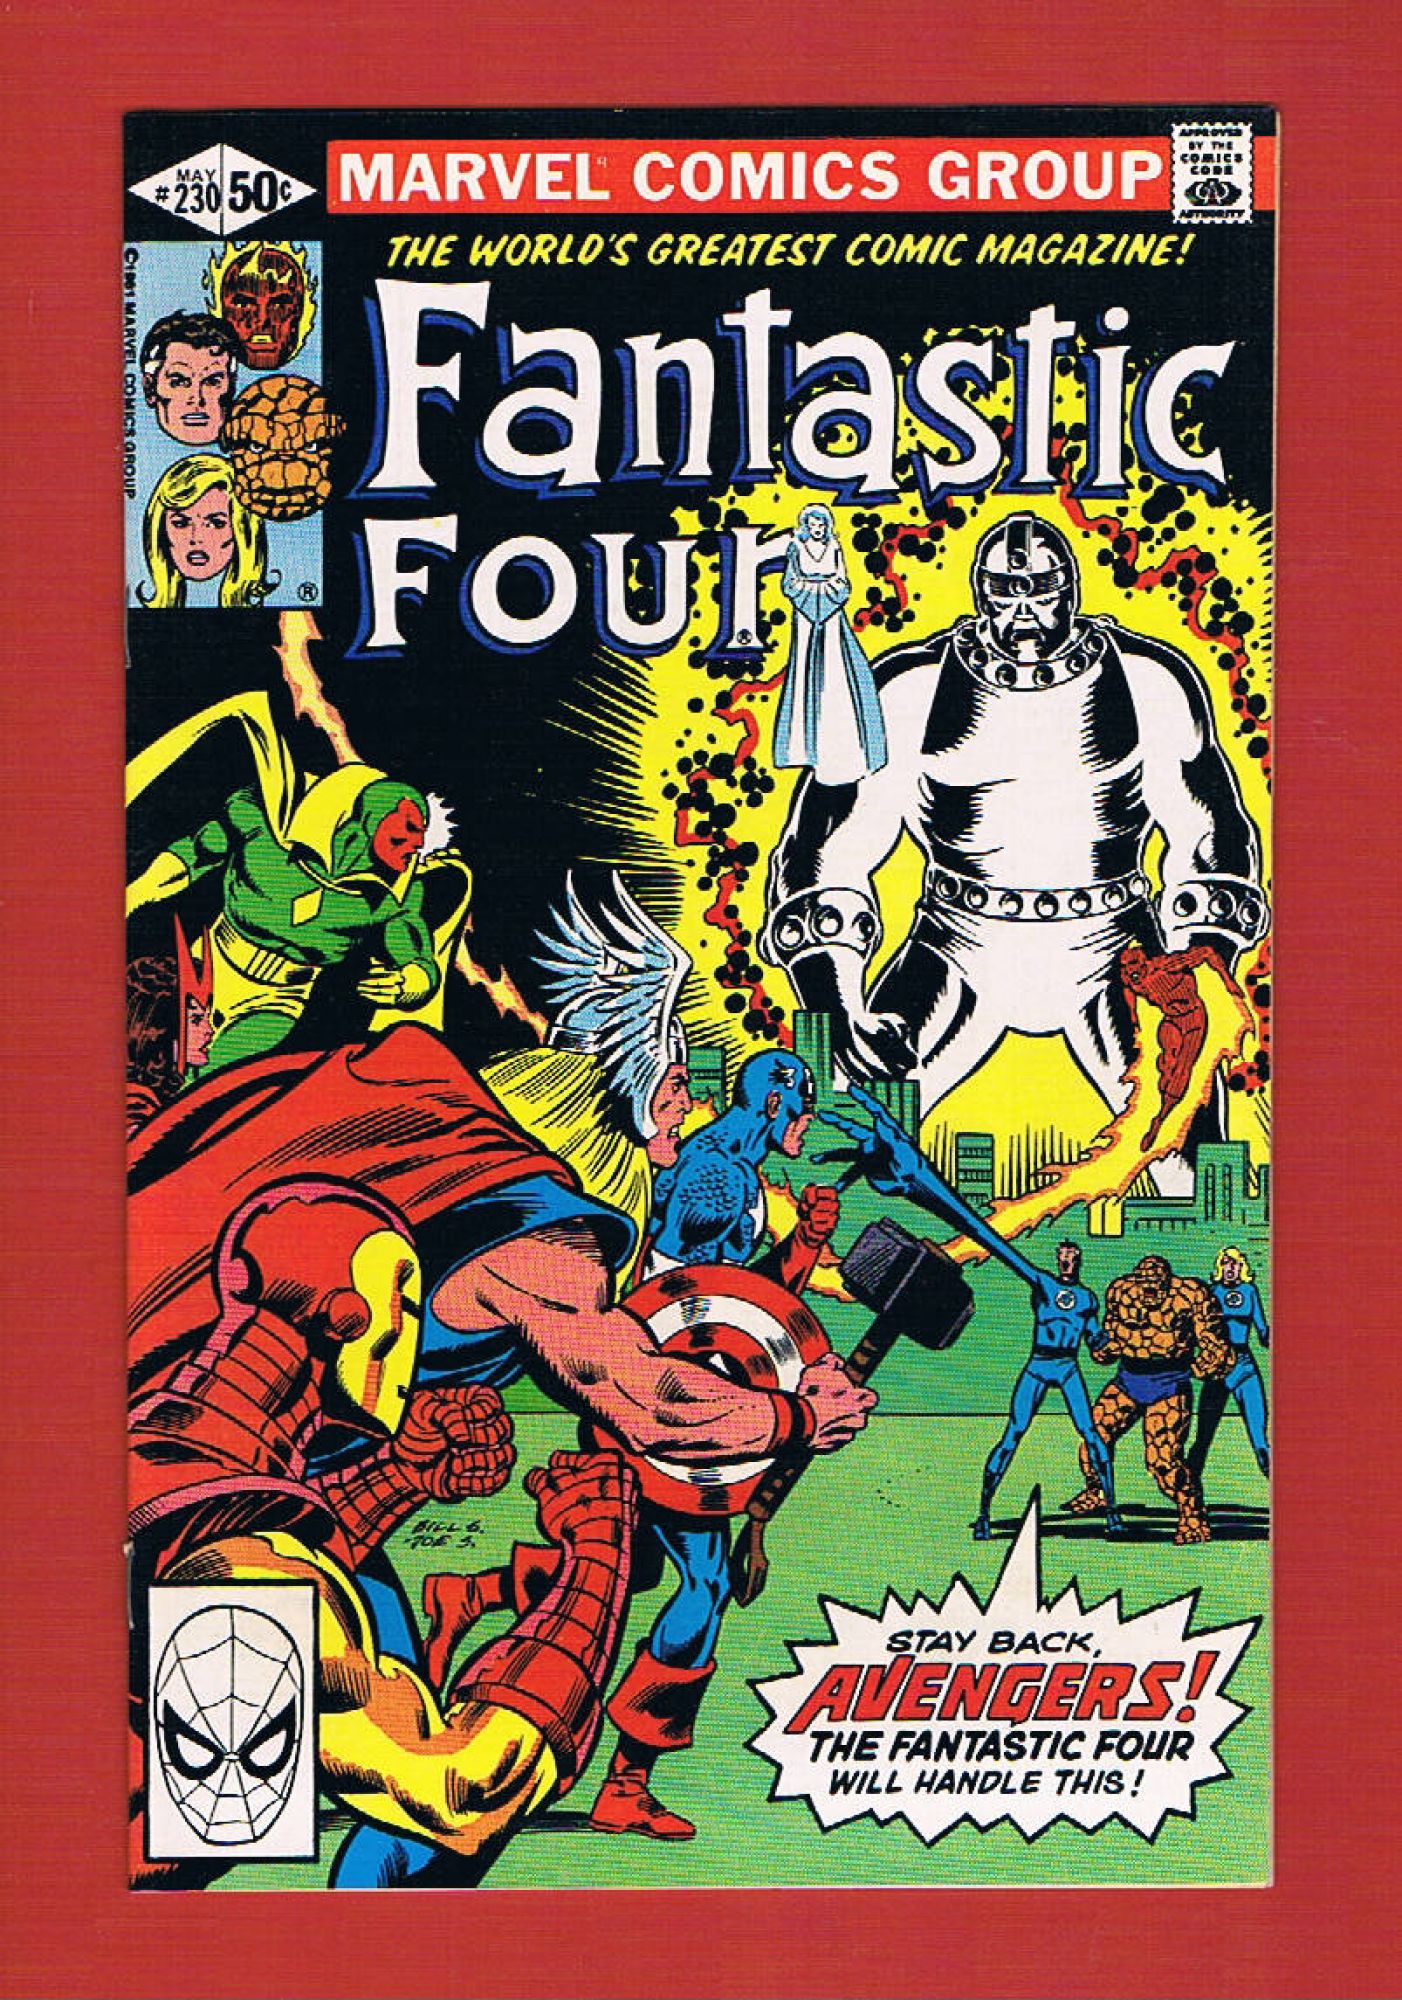 Fantastic Four #230, May 1981, 8.5 VF+